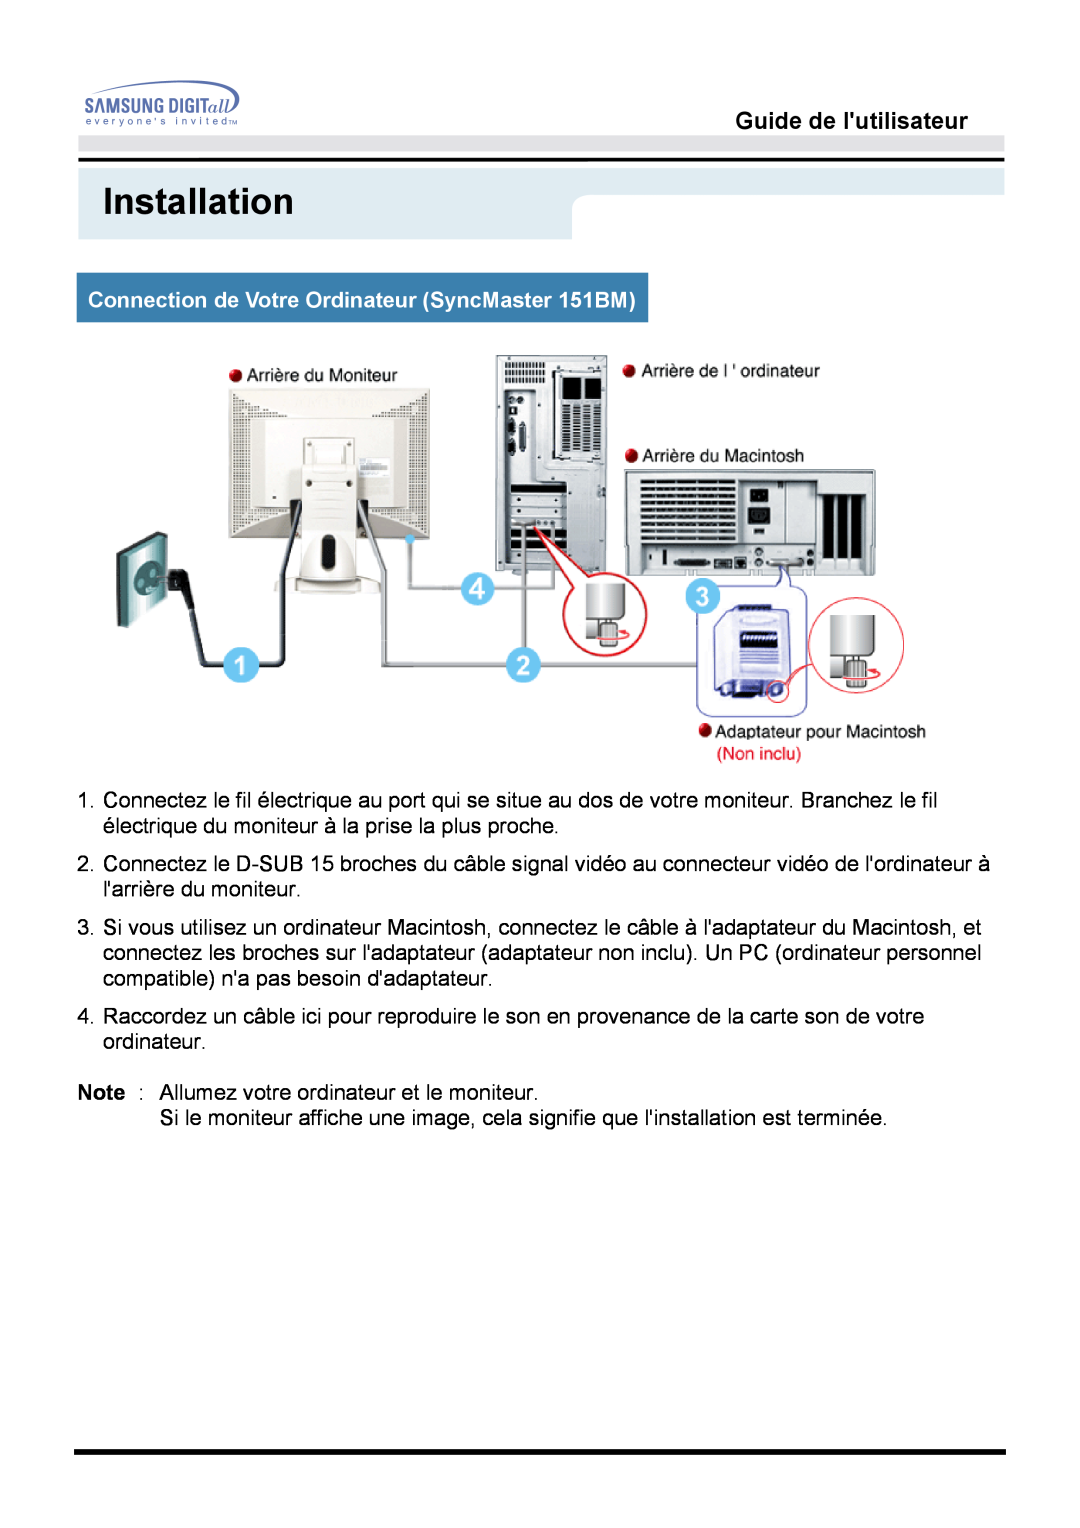 Samsung GH15MSAB/EDC, GH15MSSS/EDC Connection de Votre Ordinateur SyncMaster 151BM, Installation, Guide de lutilisateur 